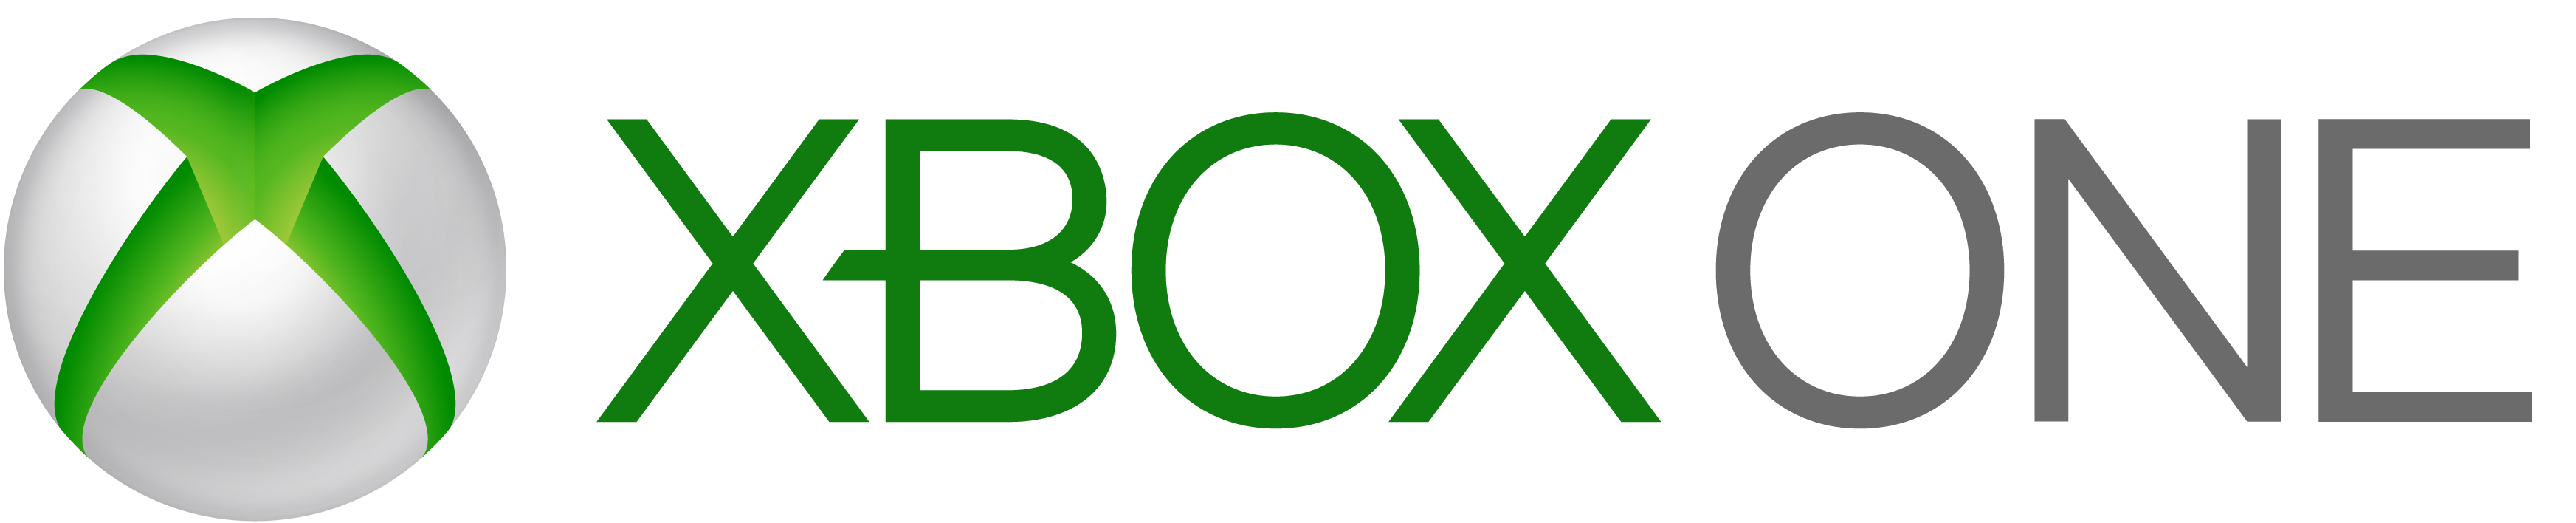 xbox one logo #2506